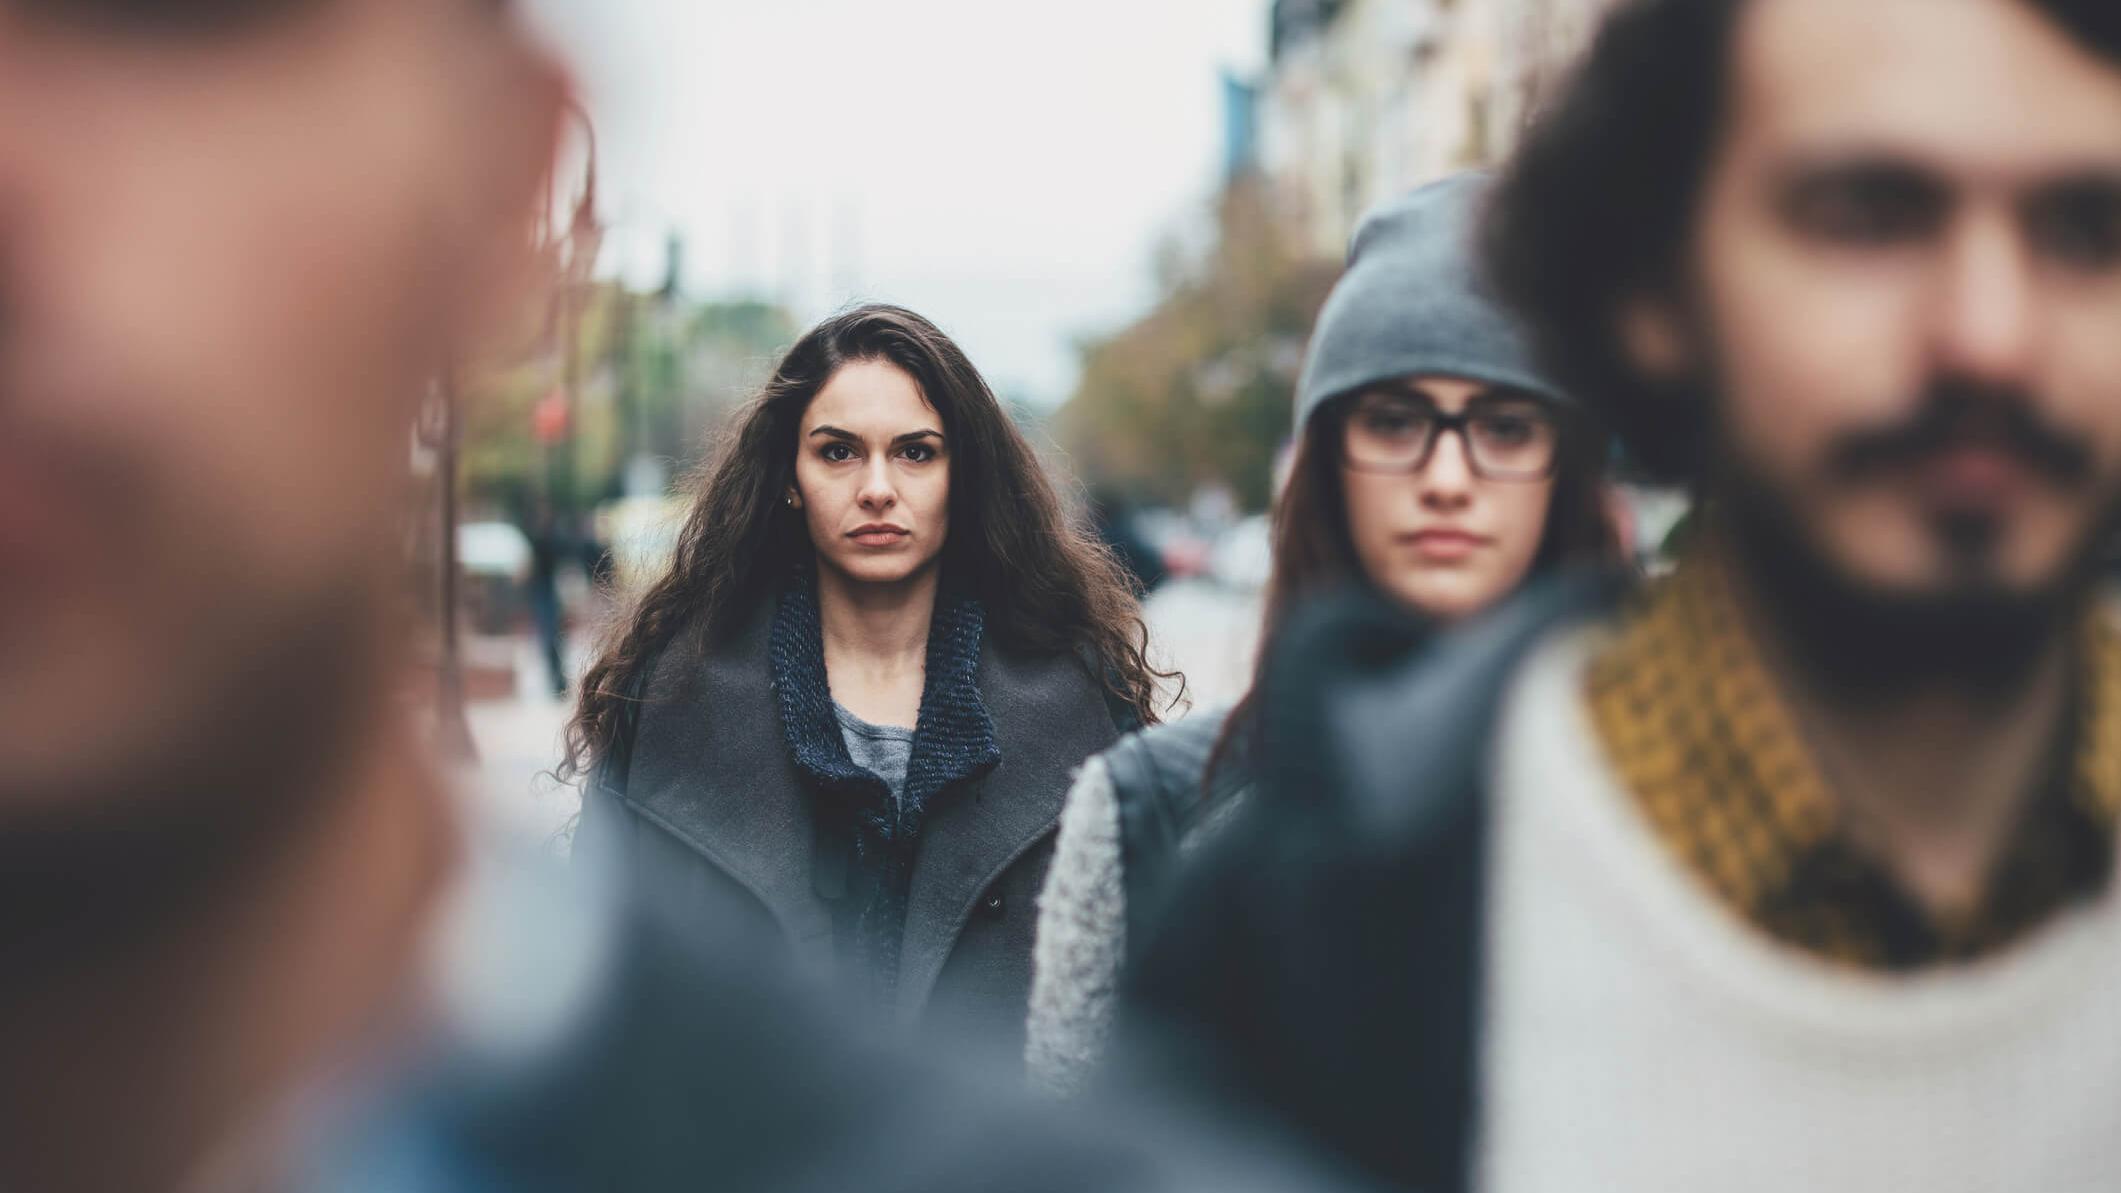 Eine junge Frau sieht unglücklich aus in einer Gruppe junger Menschen